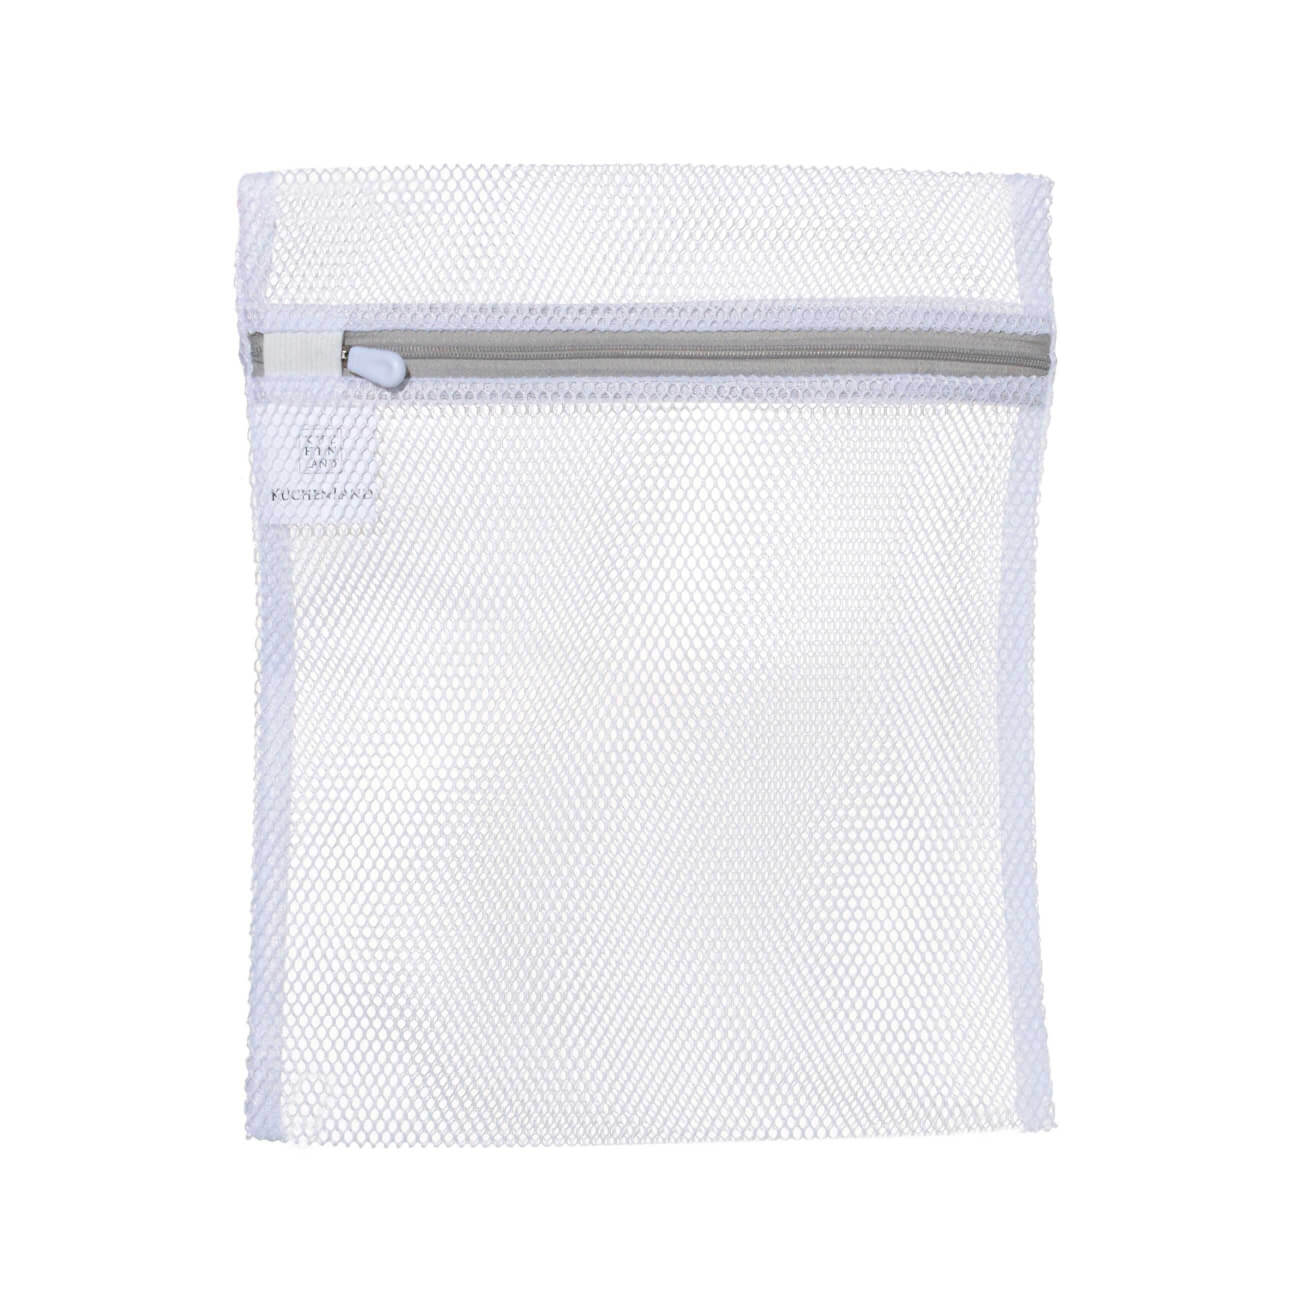 Мешок для стирки нижнего белья, 25х30 см, полиэстер, бело-серый, Safety мешок для стирки нижнего белья eurohouse